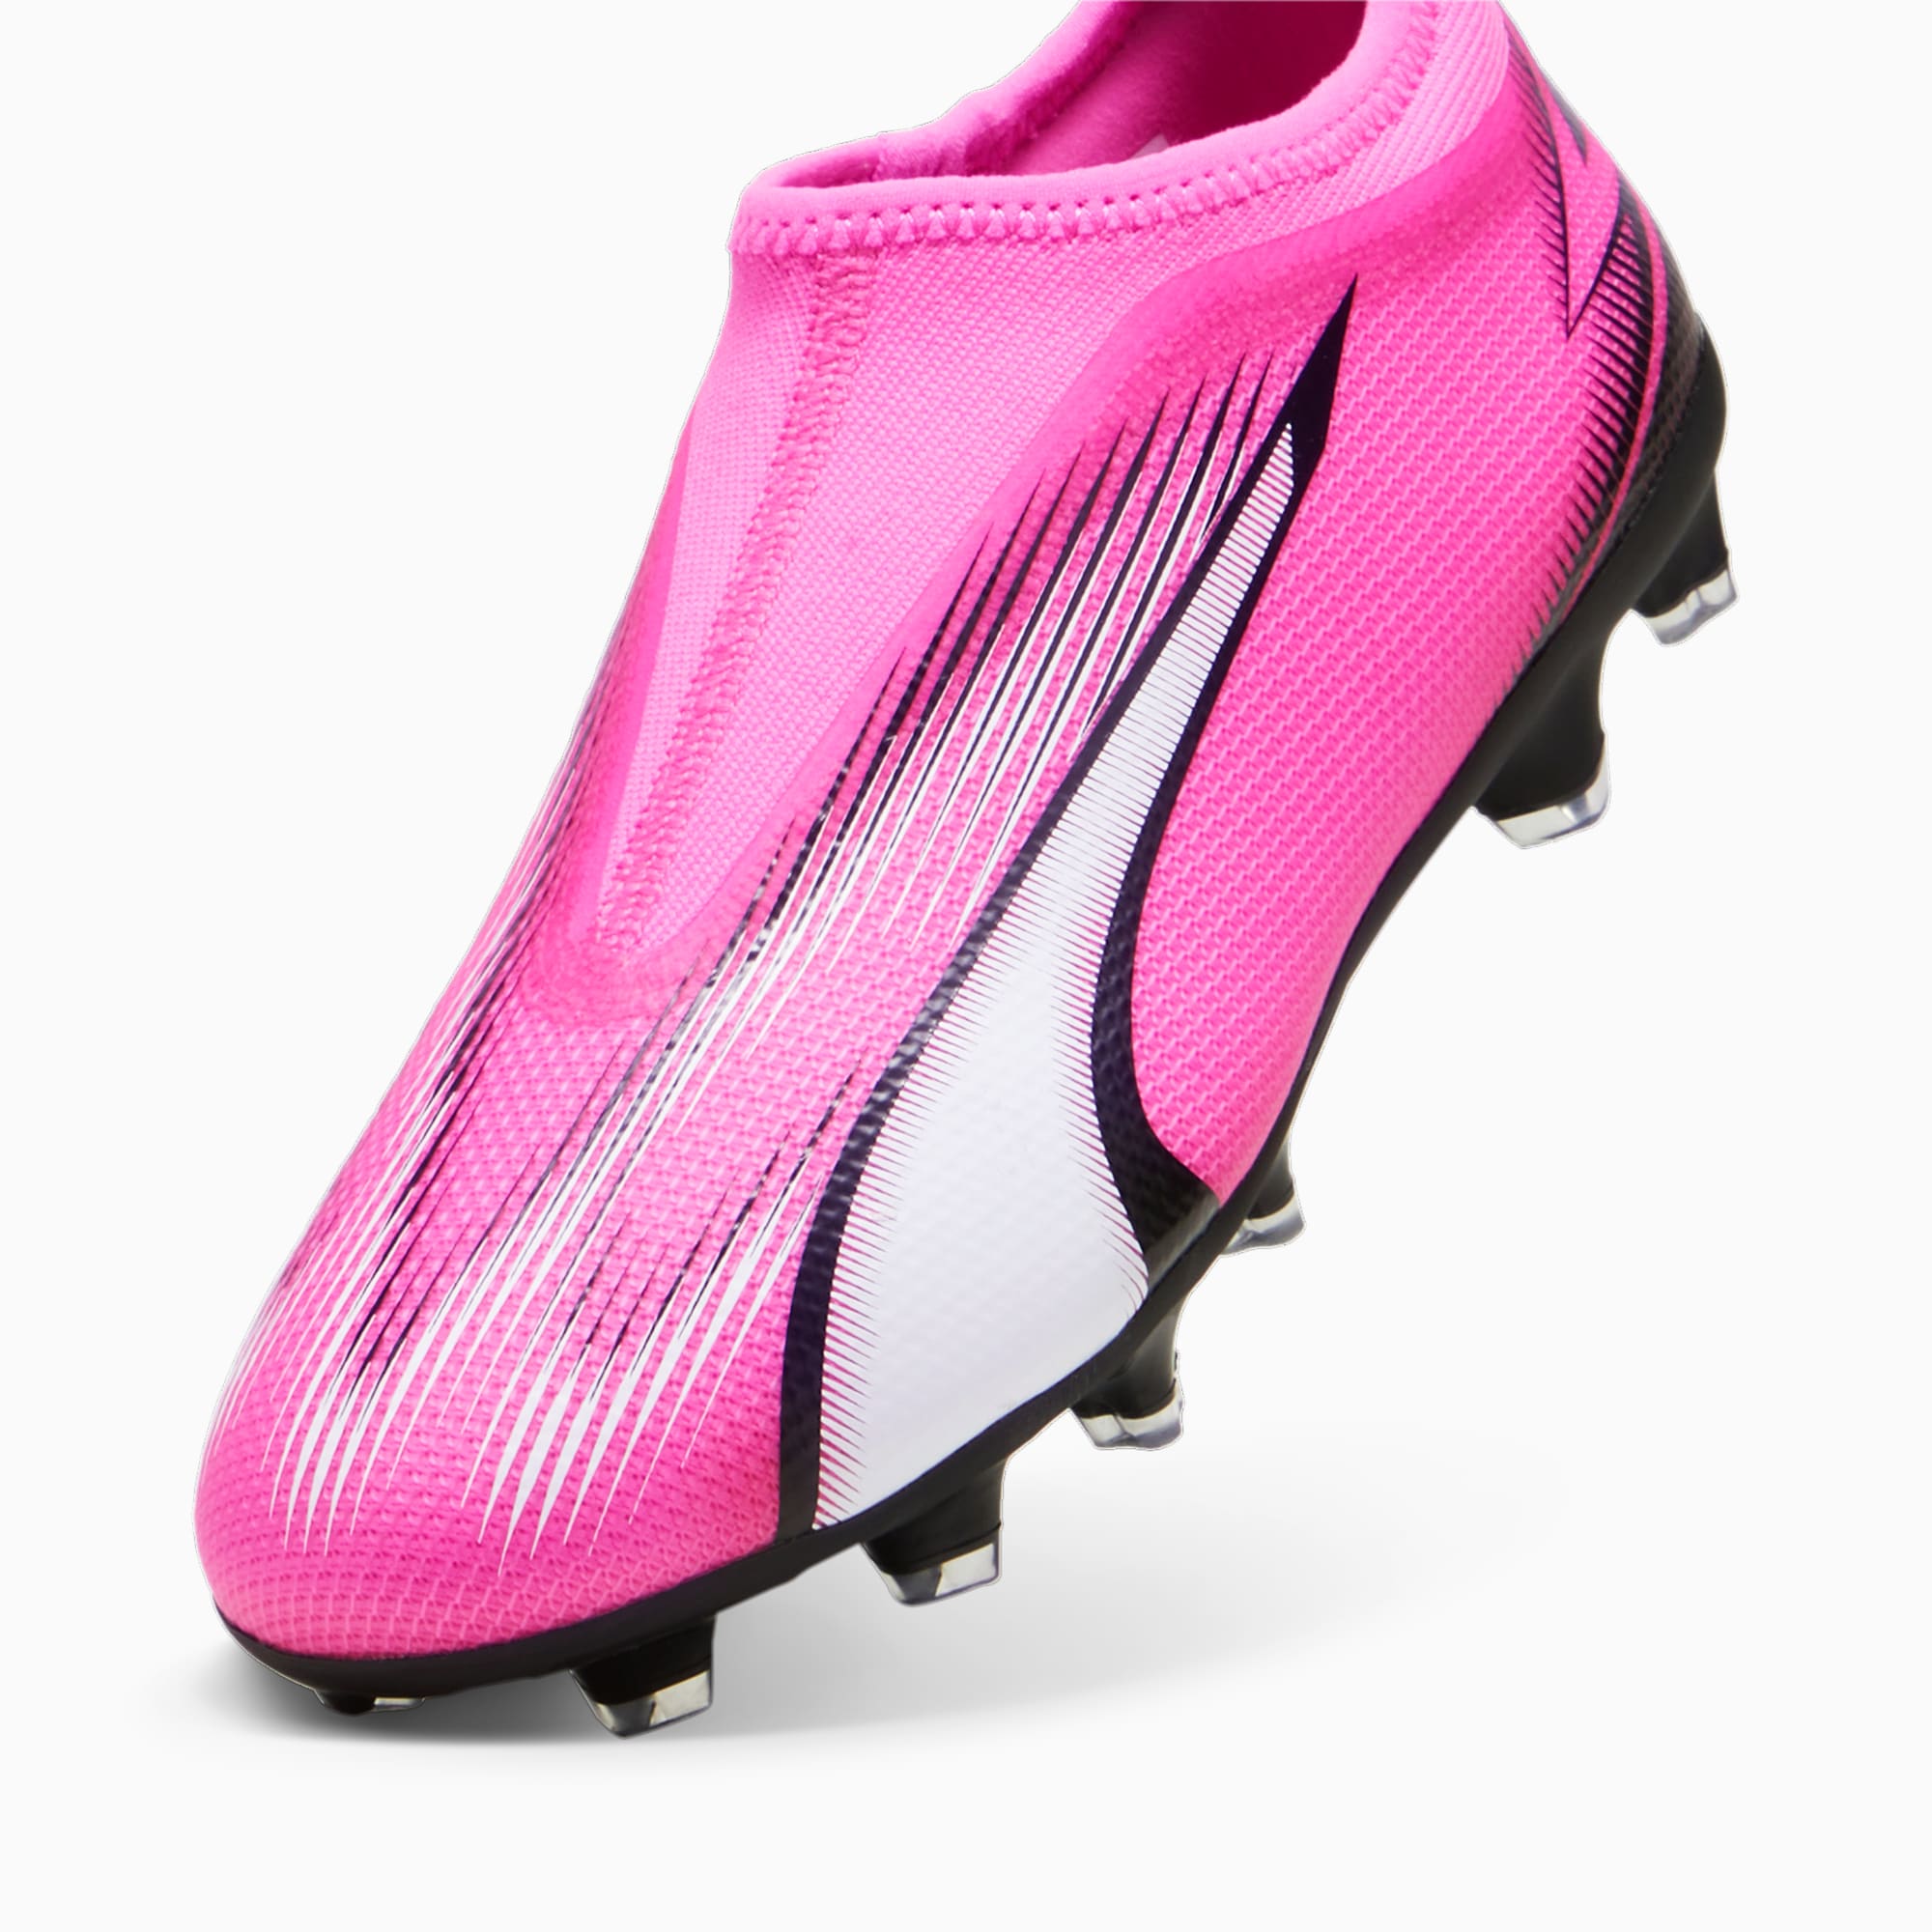 PUMA ULTRA MATCH FG/AG voetbalschoenen zonder veters, Roze/Zwart/Wit